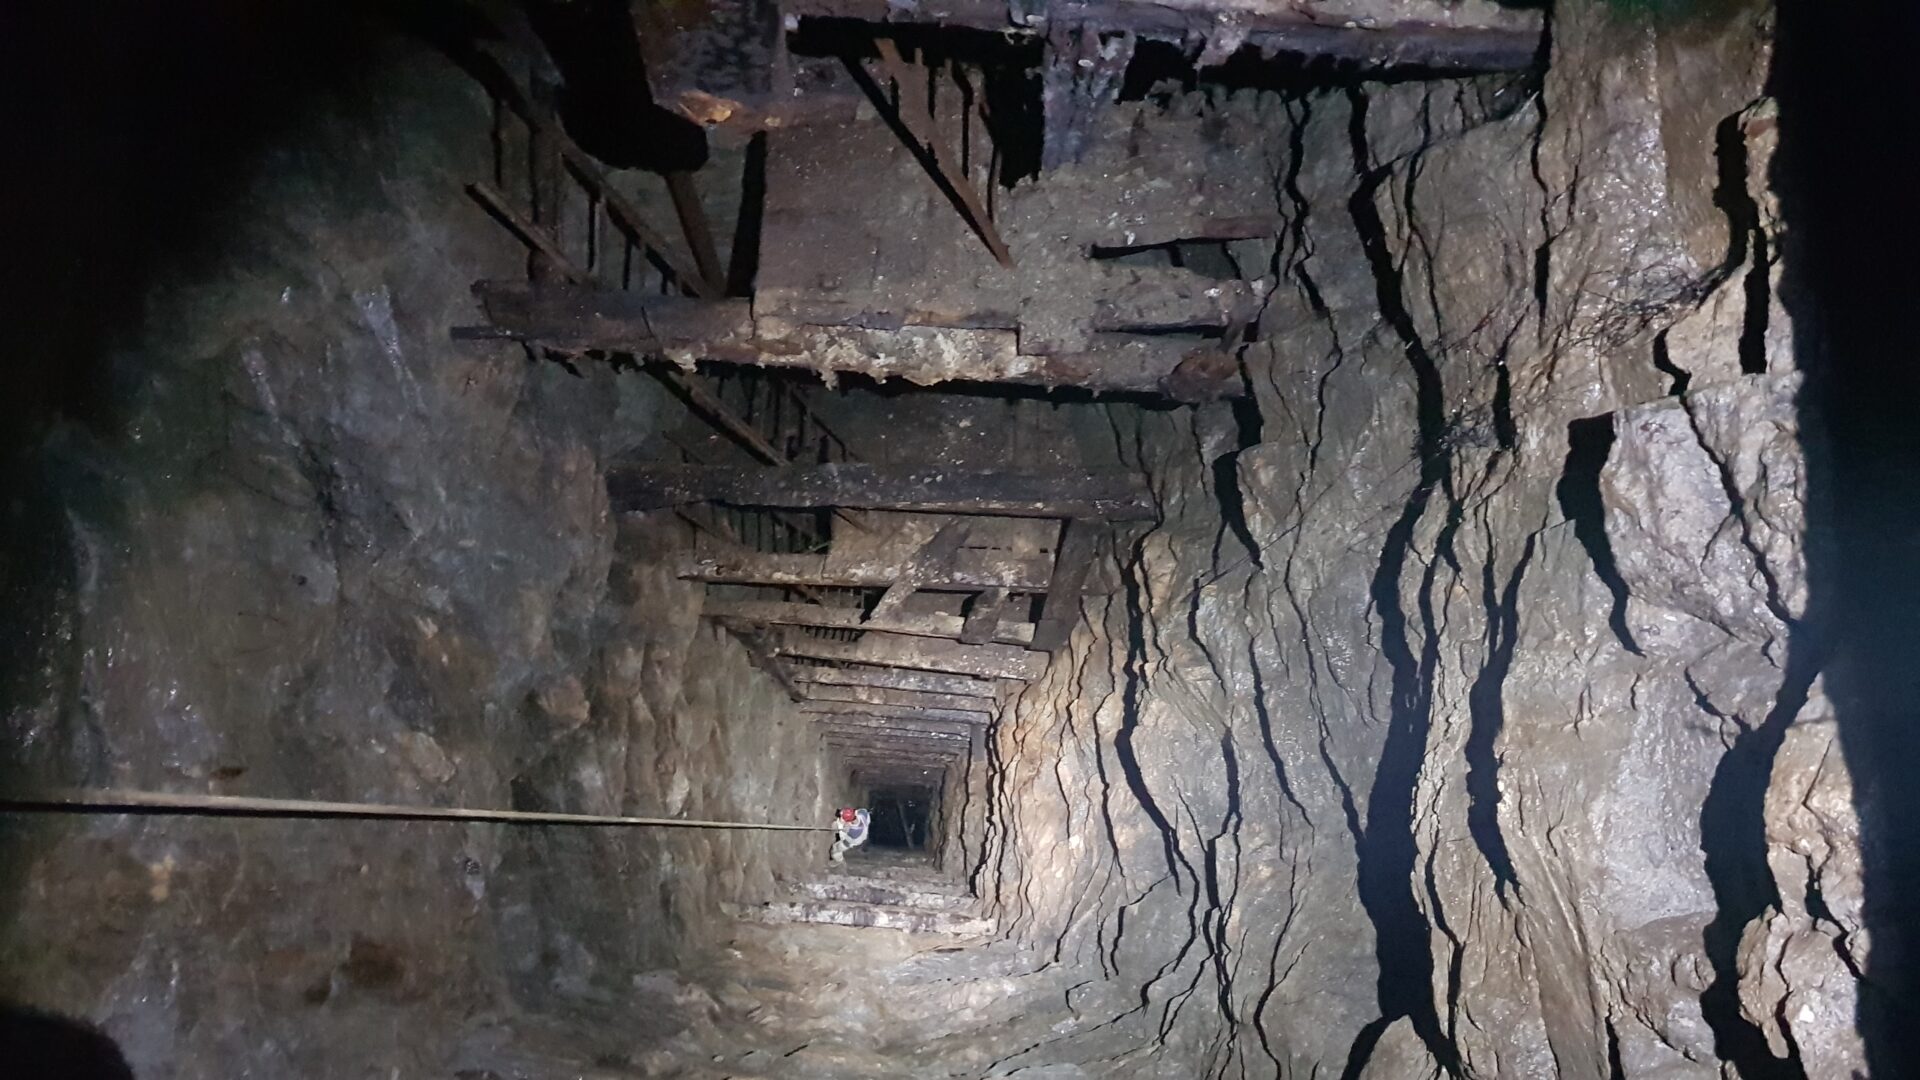 il pozzo profondo 100 metri della miniera abbandonata